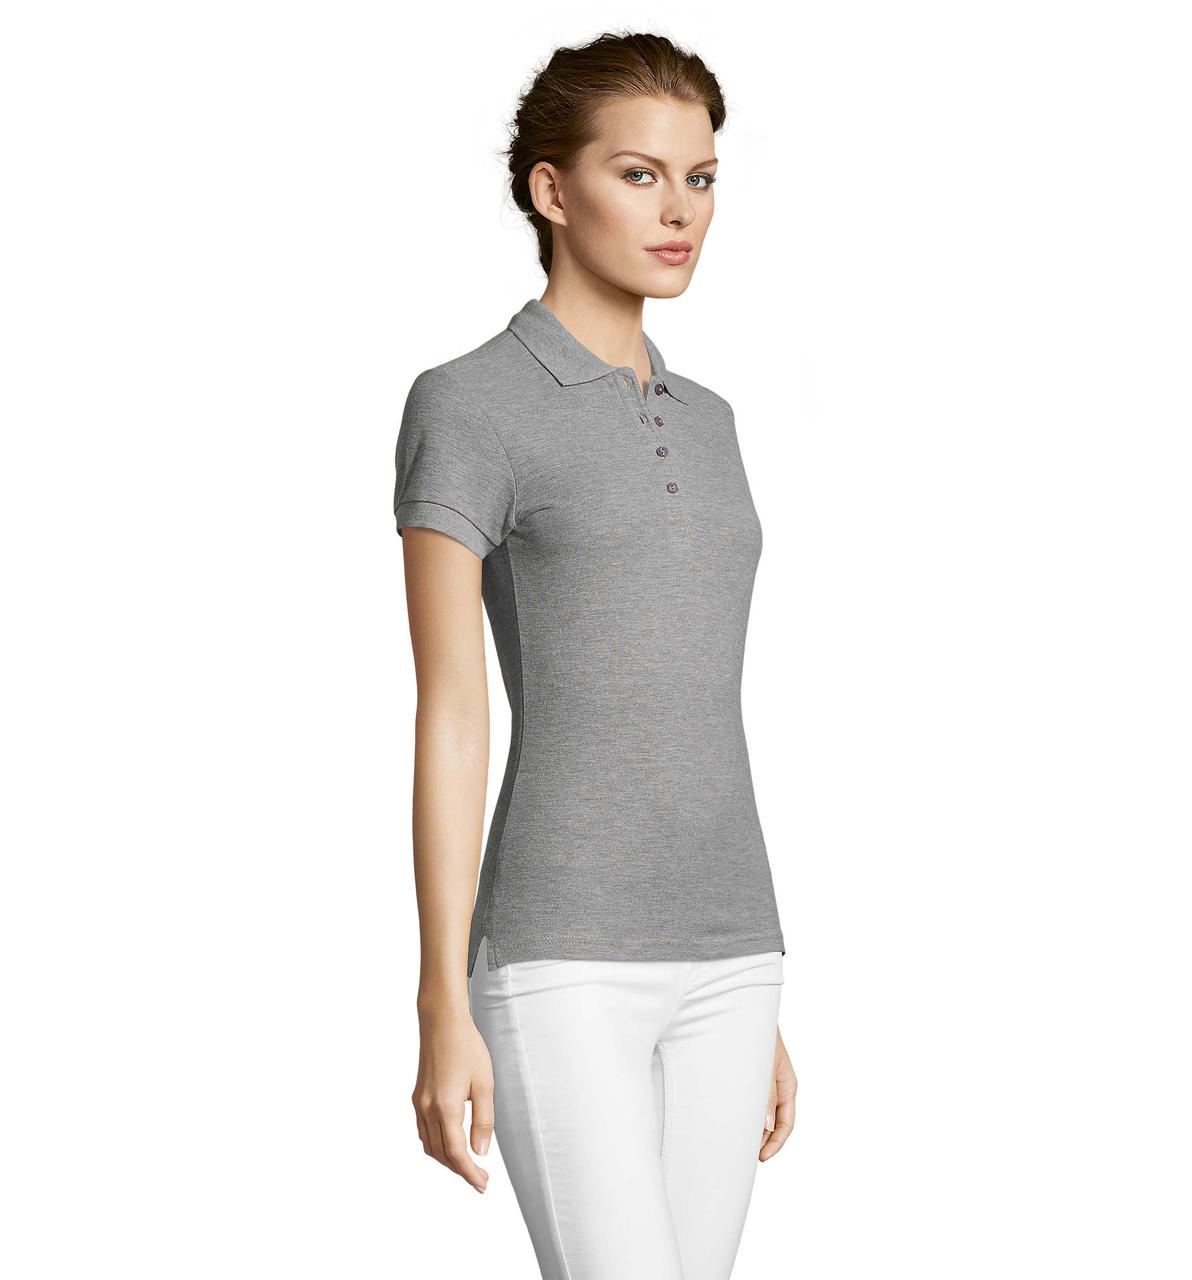 Жіноча сорочка поло SOL'S PEOPLE, Grey-melange_360, розміри від S до ХXL